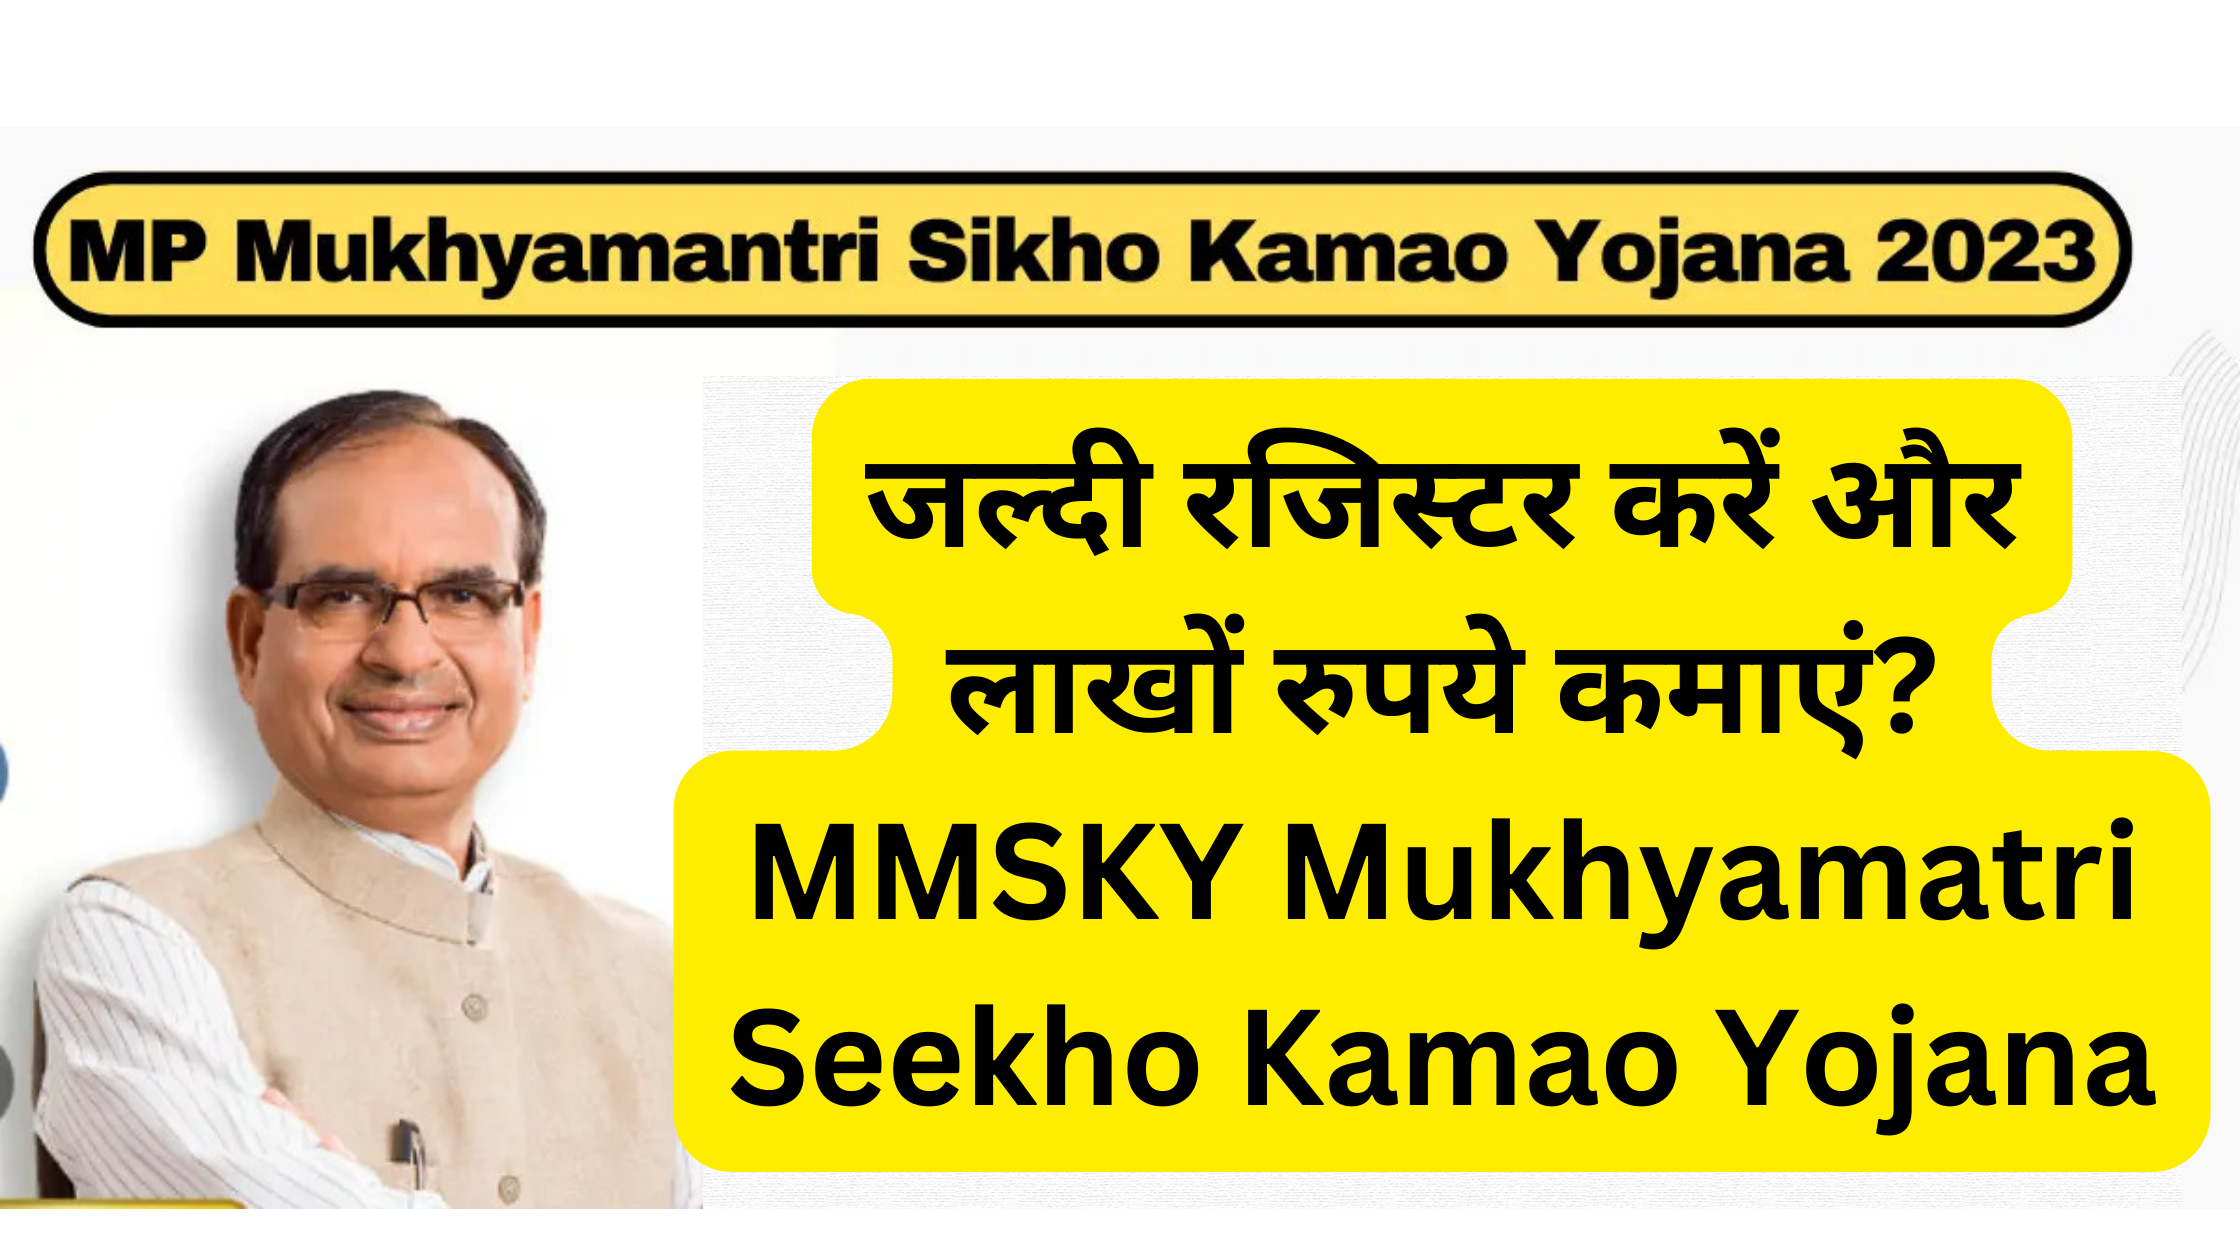 जल्दी रजिस्टर करें और लाखों रुपये कमाएं MMSKY Mukhyamatri Seekho Kamao Yojana